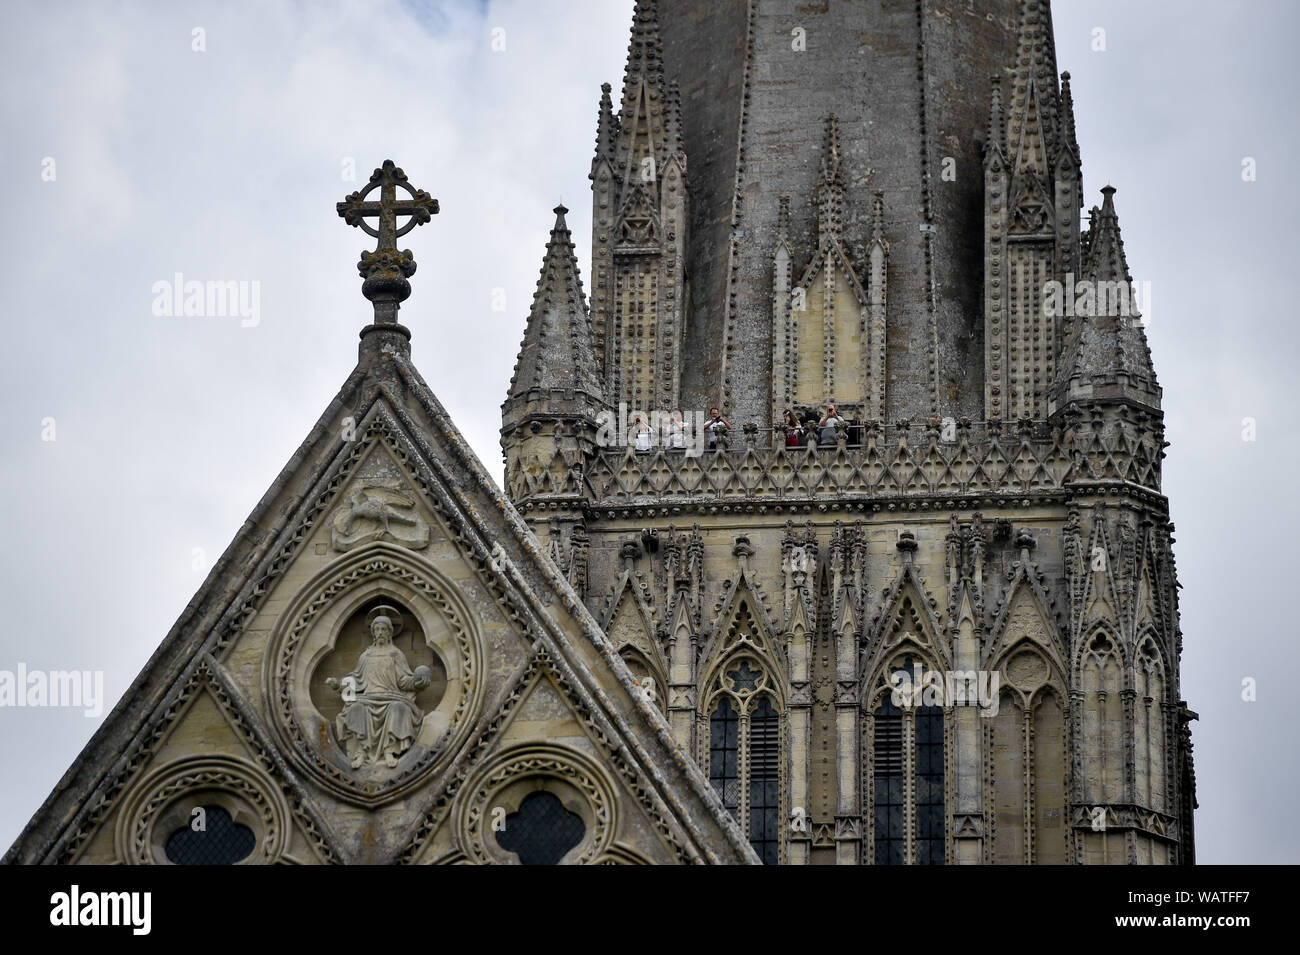 Menschen auf der west Balkon in Salisbury in der Kathedrale von Salisbury Turm Tour, wo die Besucher auf der Basis der 123 Meter hohe Turm geführte sind, Klettern 332 hauptsächlich Spirale Schritte, durch die gewölbten Dach Platz, vorbei an mittelalterlichen Glasmalereien und über das Innenleben der Kathedrale aus dem 13. Jahrhundert. Stockfoto